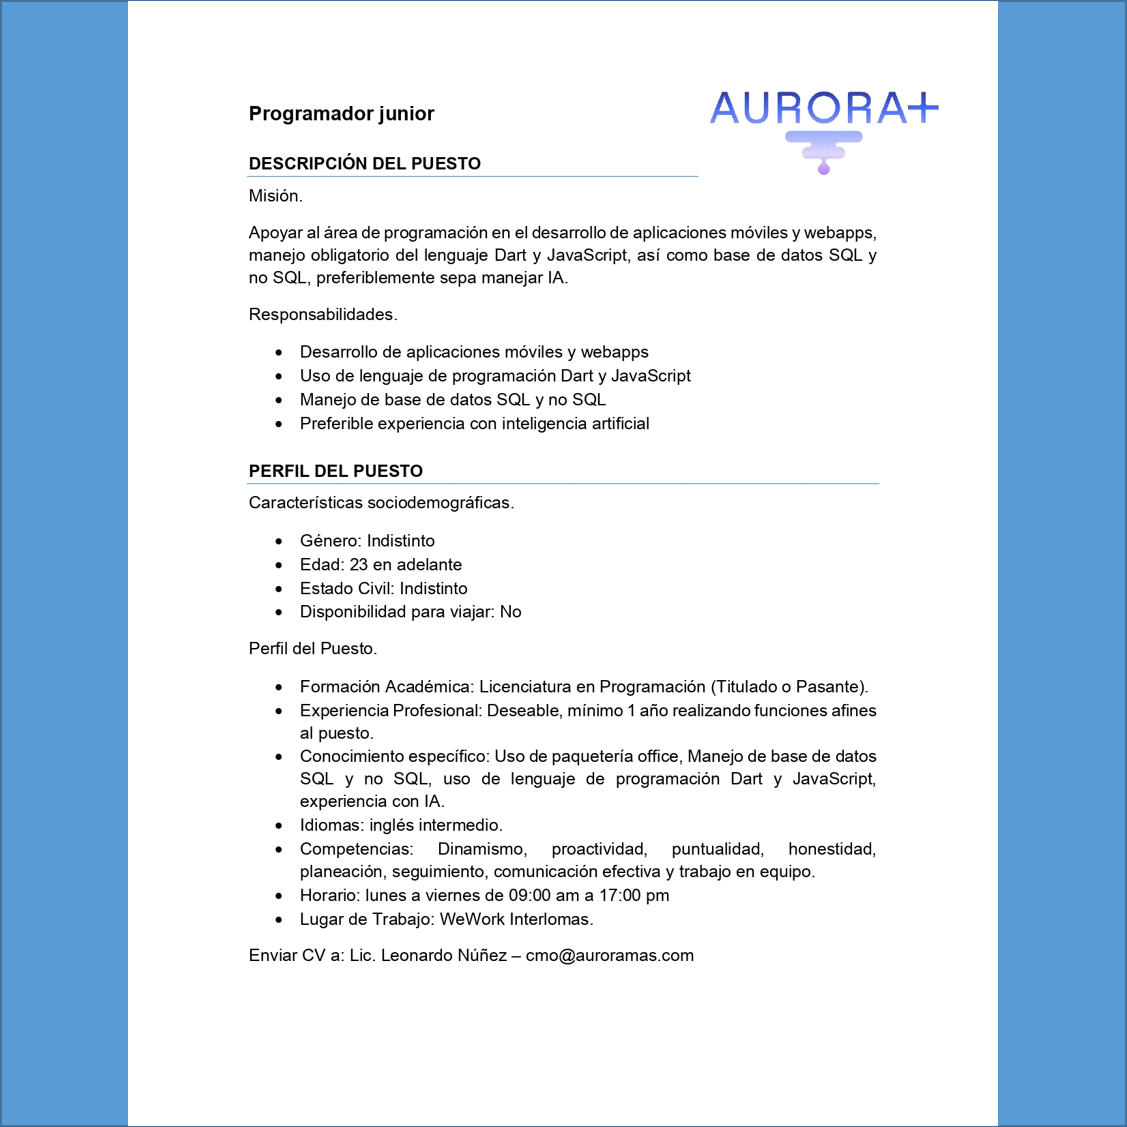 VACANTE - Programador Jr. / Aurora+